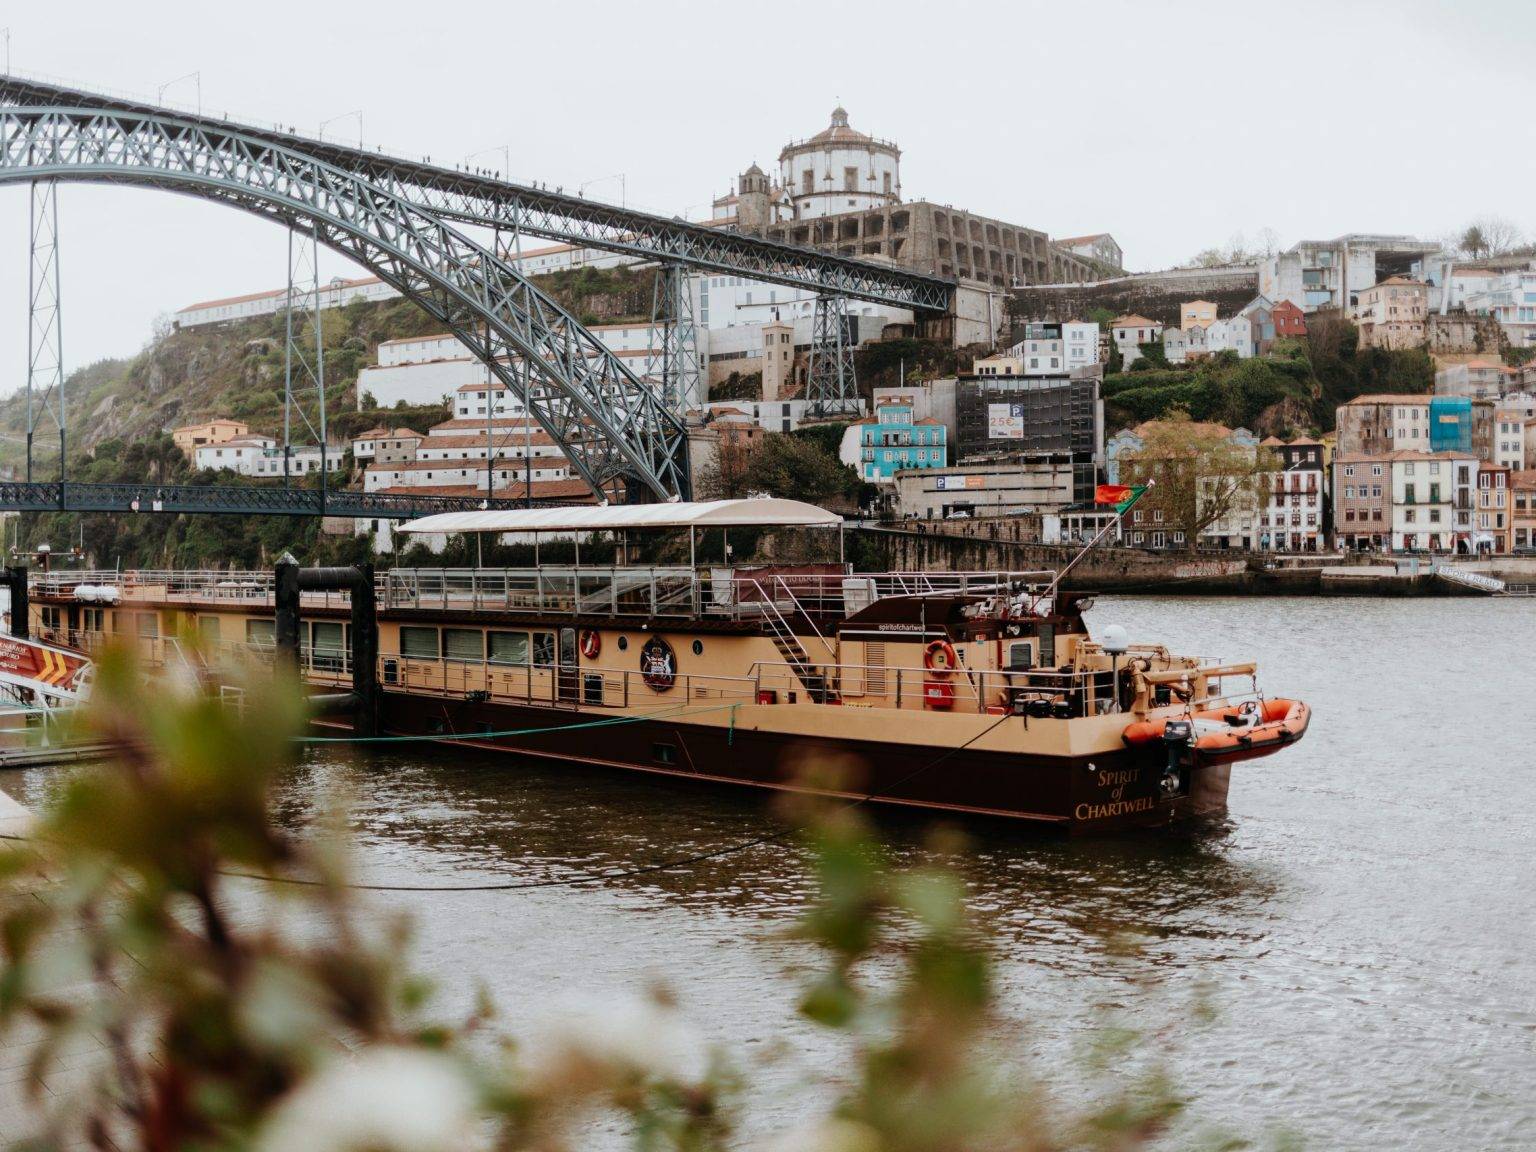 Ein dicht bebautes Ufer am Douro, links die imposante Metallbrücke und vorn ein Schiff, das vor Anker liegt.